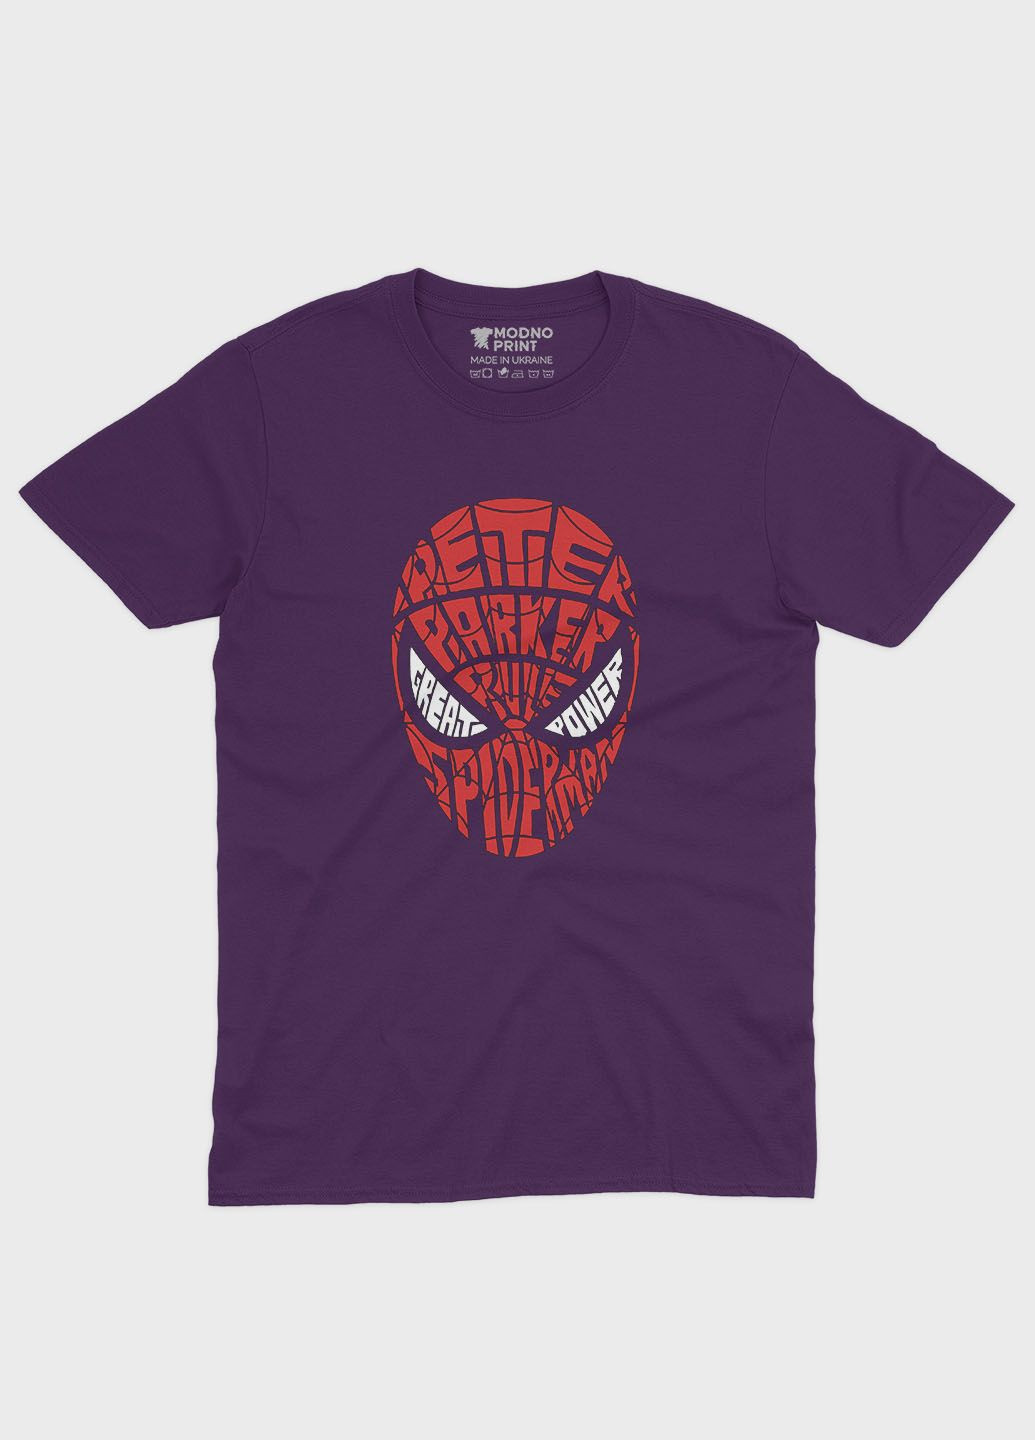 Фіолетова демісезонна футболка для дівчинки з принтом супергероя - людина-павук (ts001-1-dby-006-014-002-g) Modno